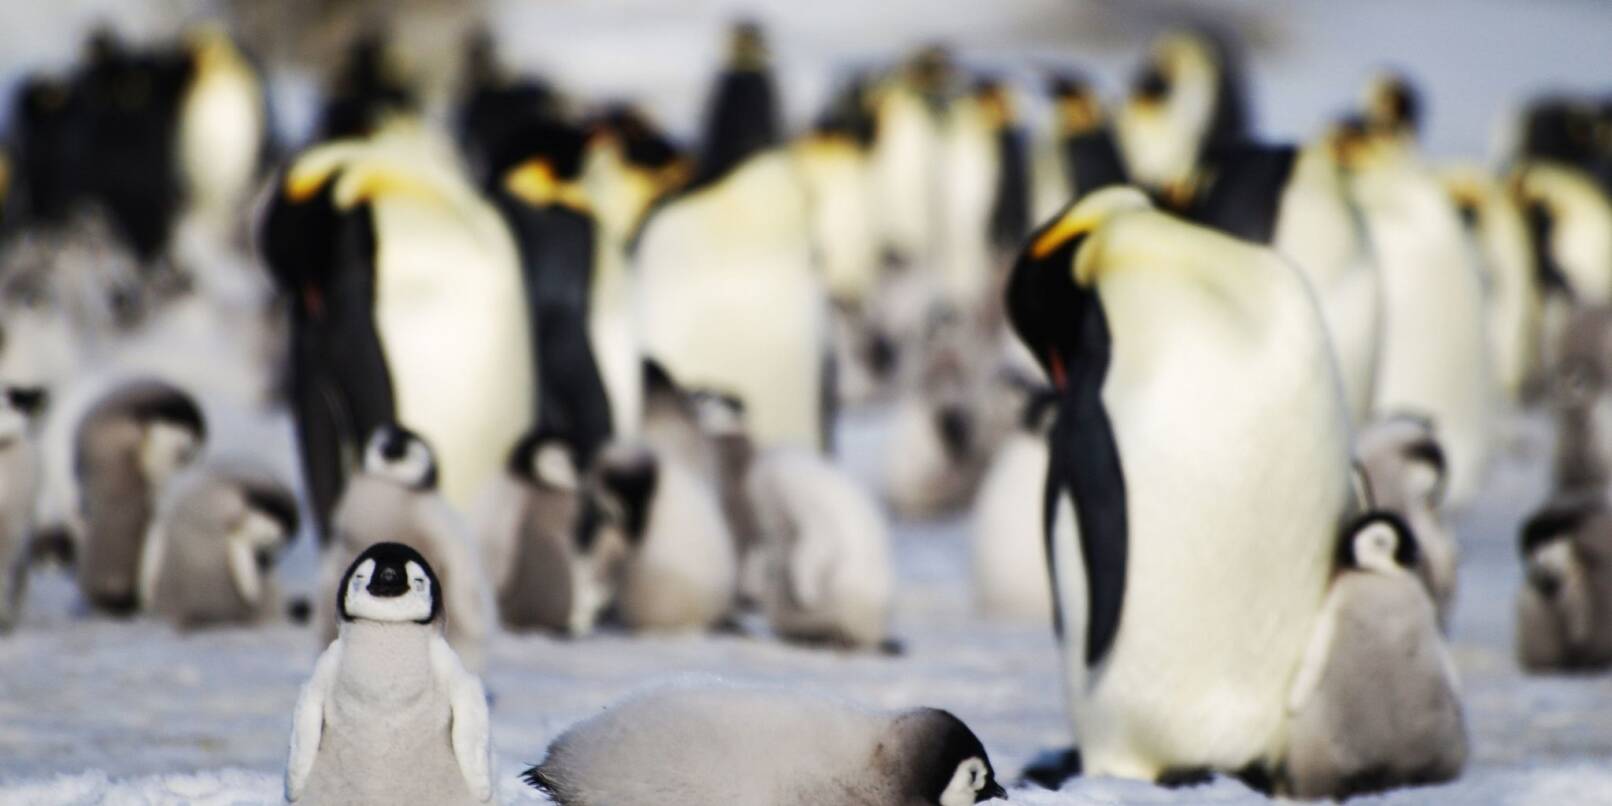 Junge und ausgewachsene Kaiserpinguine einer Kolonie in der Antarktis.